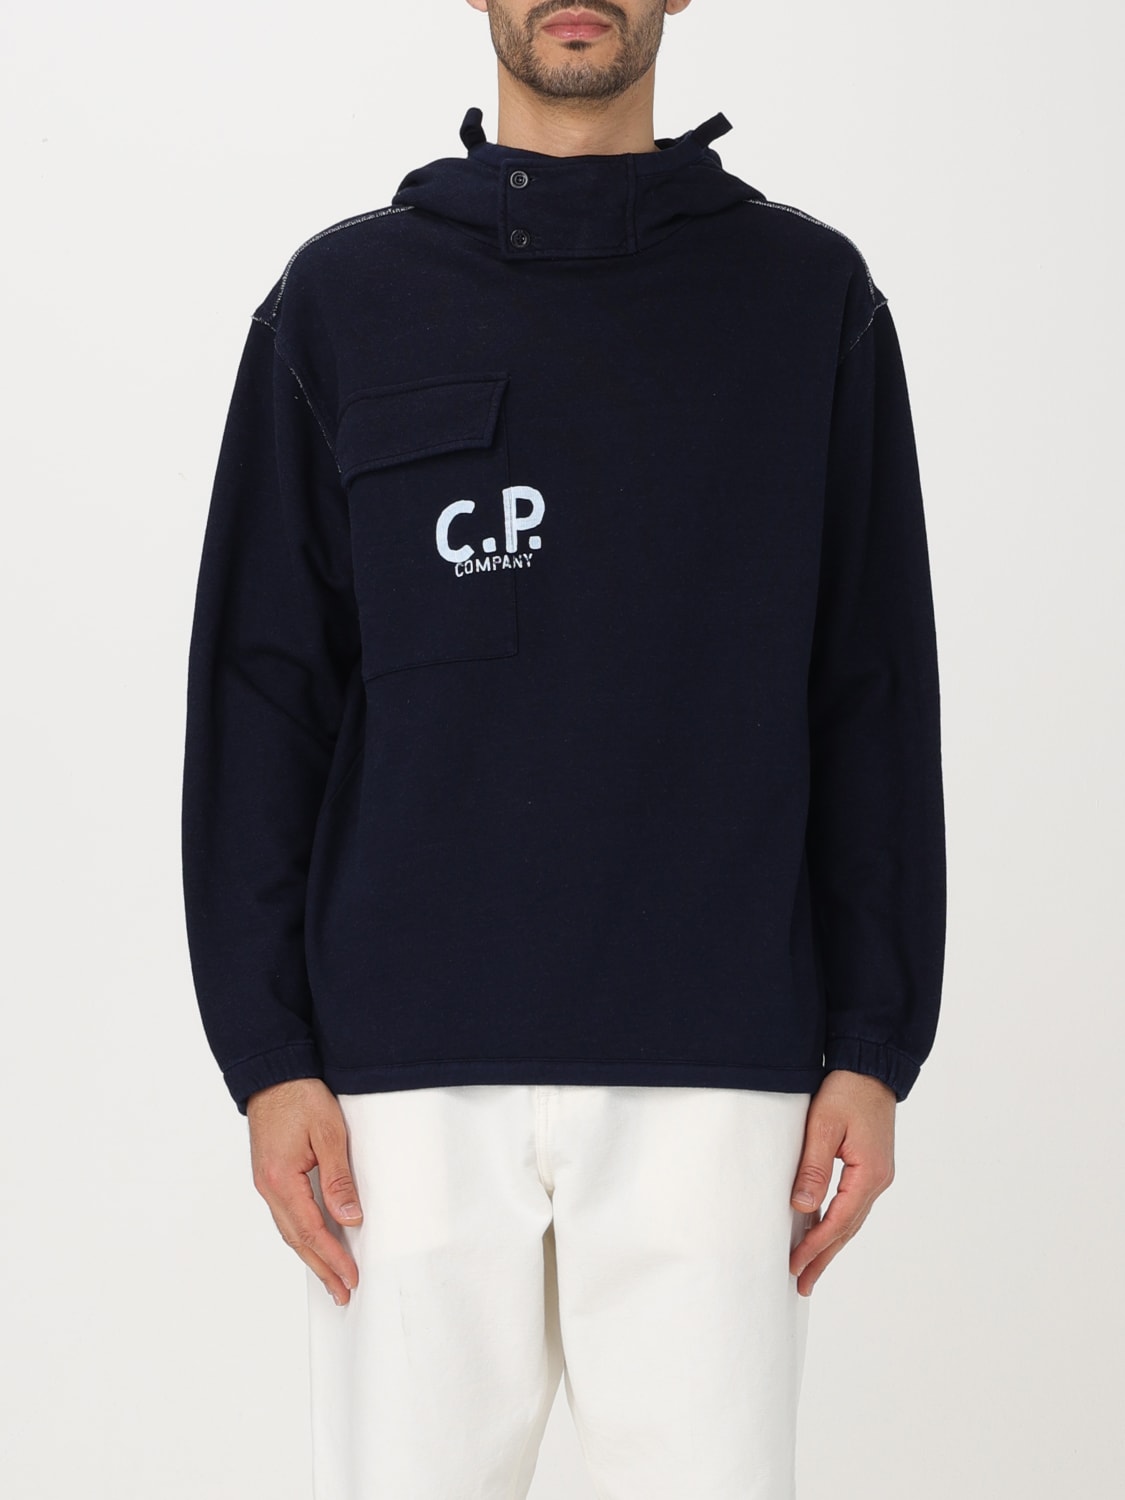 C.P. COMPANY：スウェットシャツ メンズ - デニム | GIGLIO.COM ...